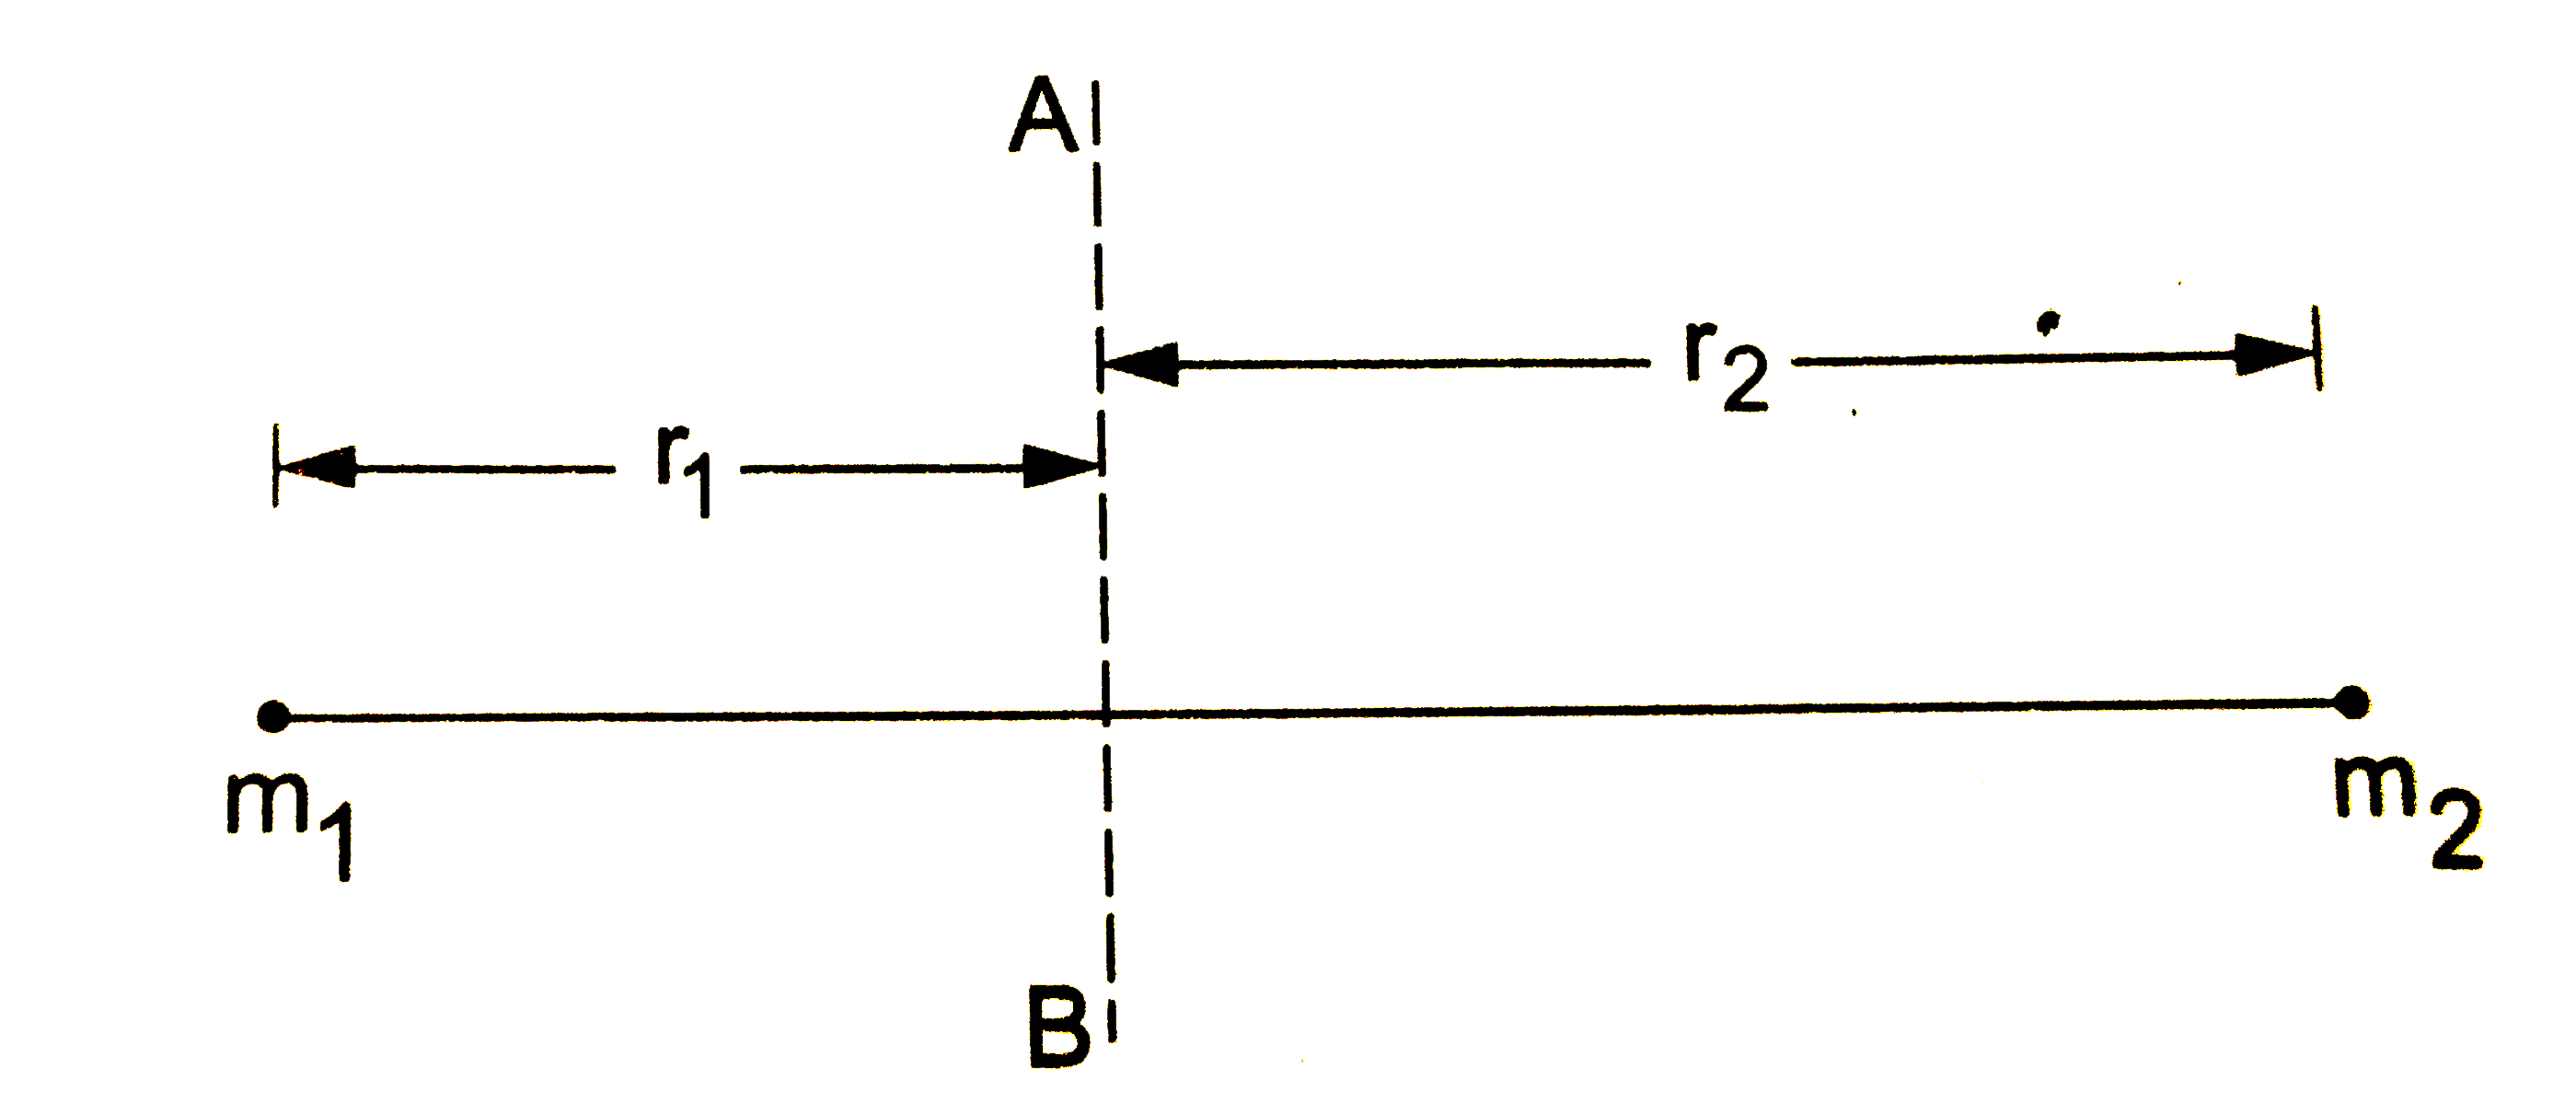 एक नगण्य भार वाली छड़ के दोनों किनारों पर भारी परन्तु छोटी वस्तुएँ जुडी है | चित्र 16.12 में दिखाए अनुसार एक रेखा AB ले जो छड़ के लंबवत है | वस्तुओ के द्रव्यमान तथा AB से इनकी दूरियाँ चित्र में दिखाई गई है | इस निकाय का AB के प्रति जड़त्व आघूर्ण निकालें |